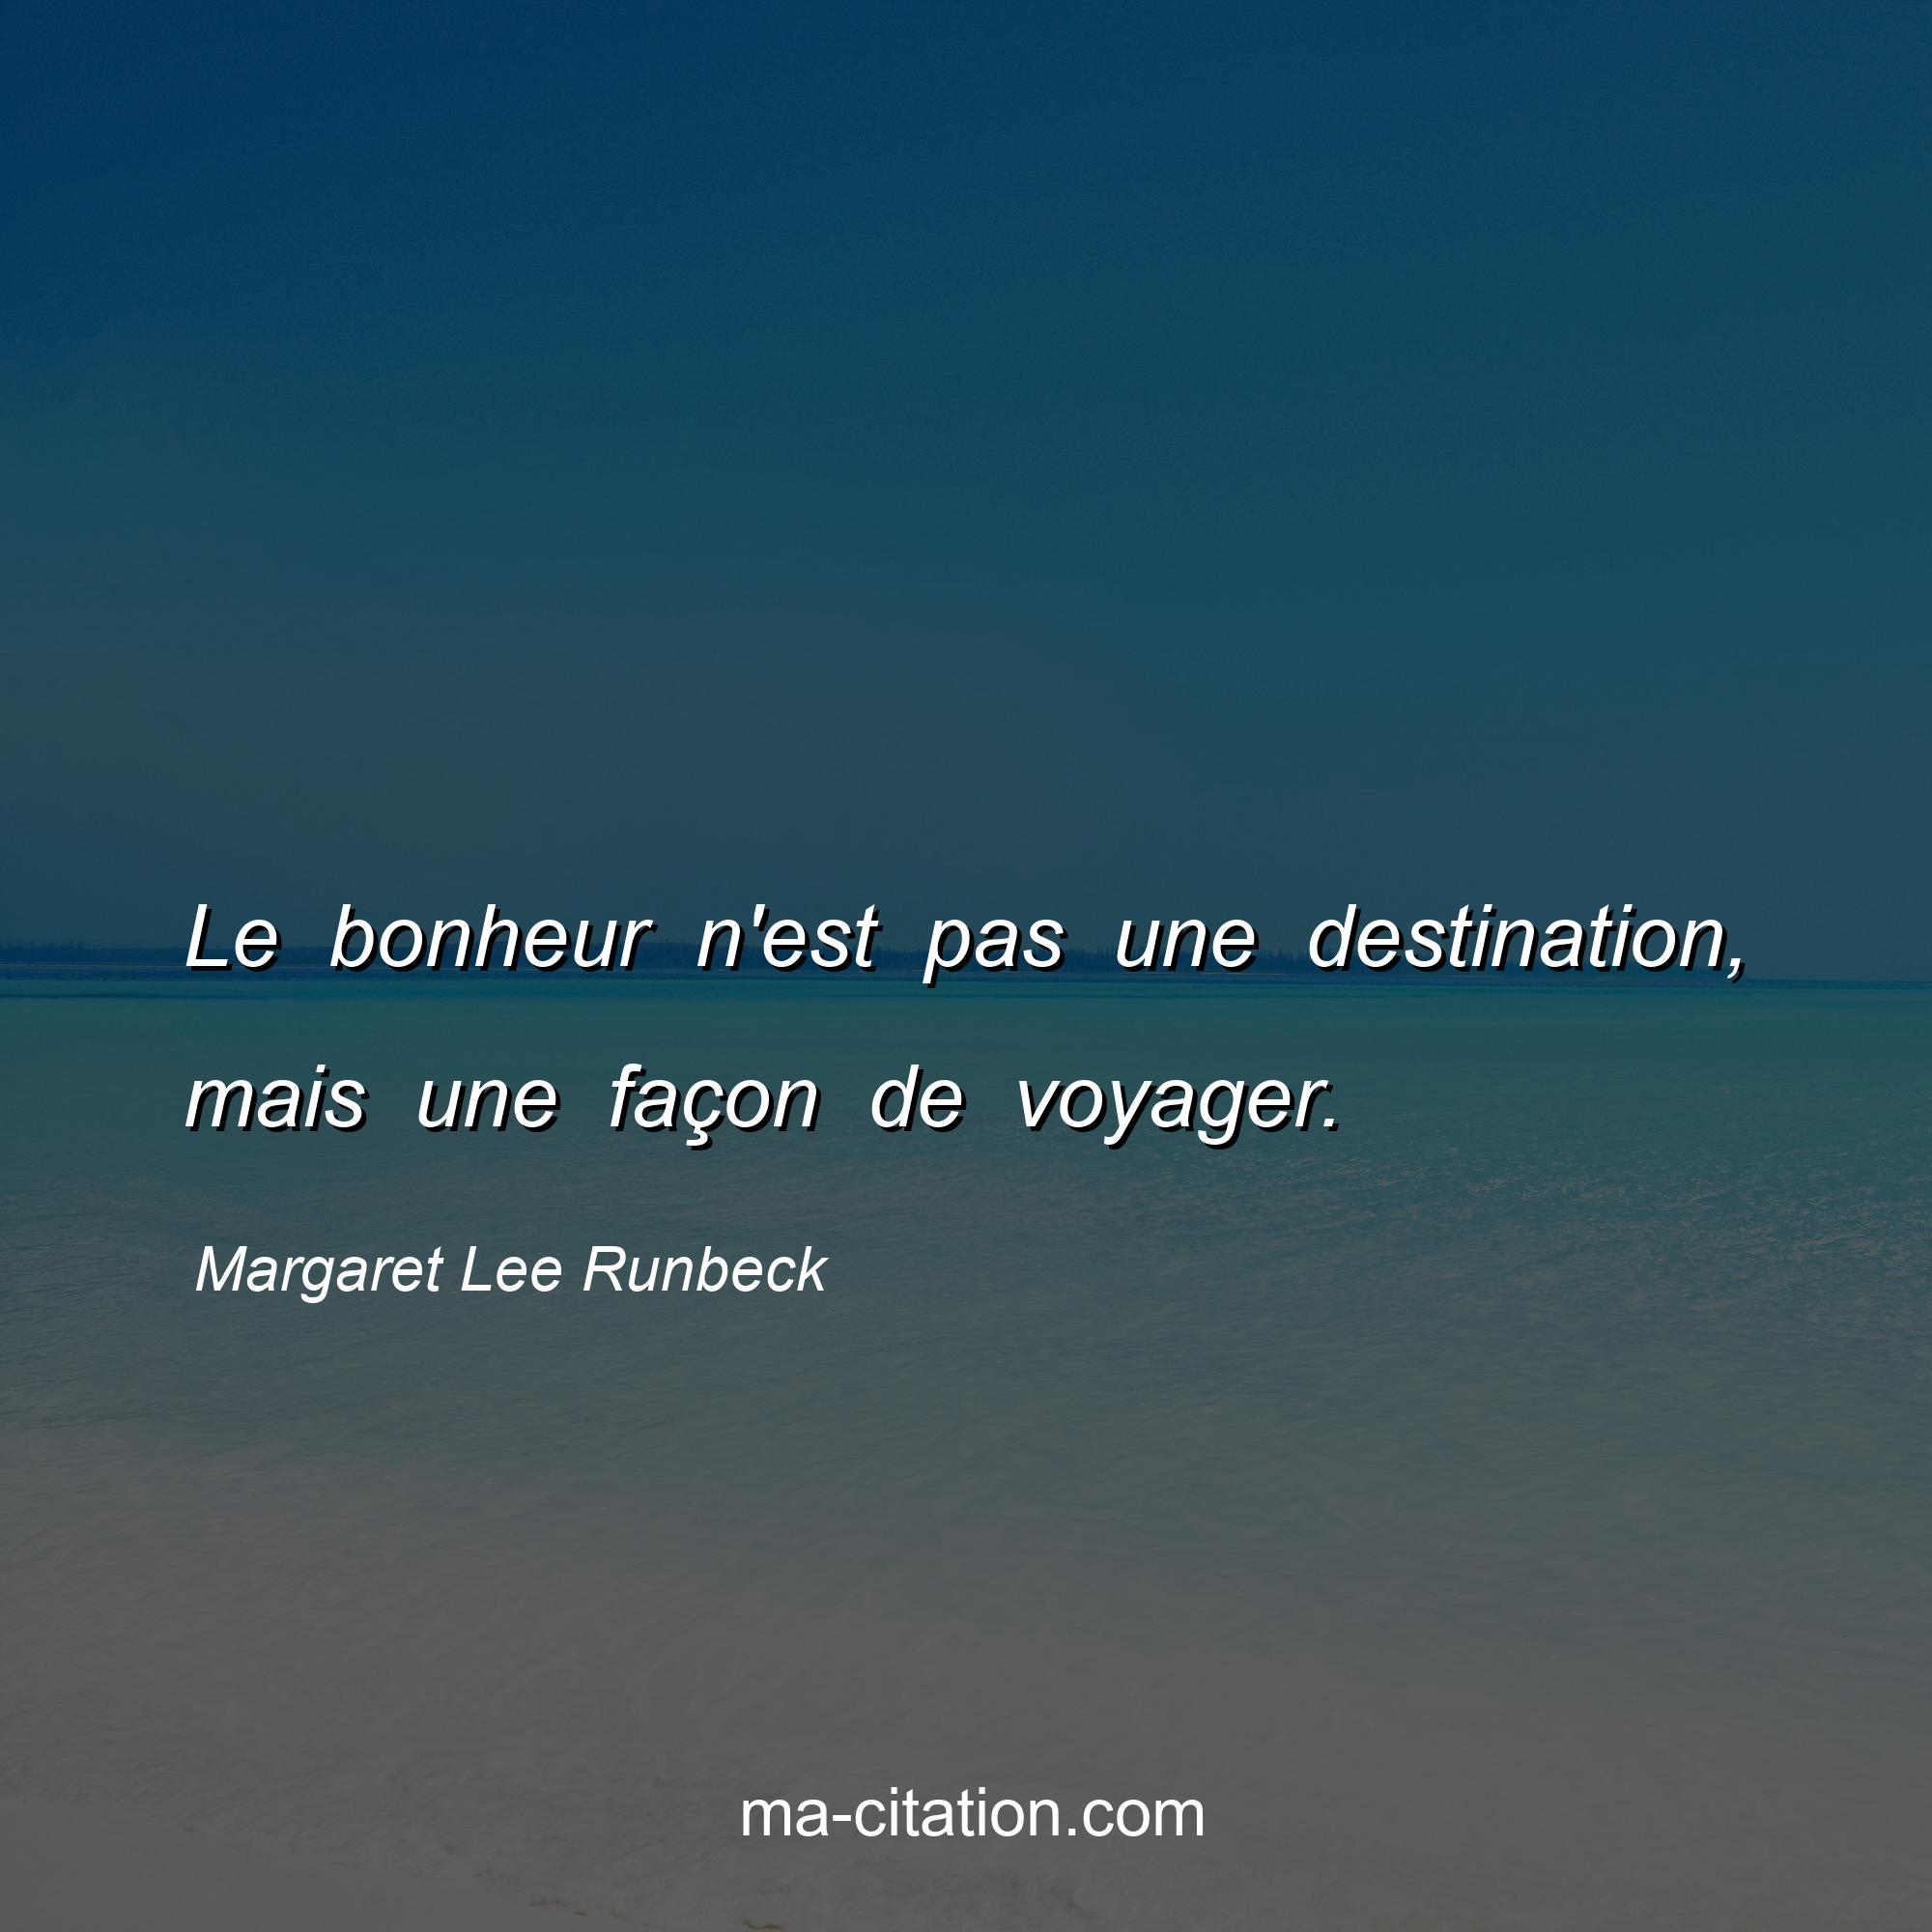 Margaret Lee Runbeck : Le bonheur n'est pas une destination, mais une façon de voyager.